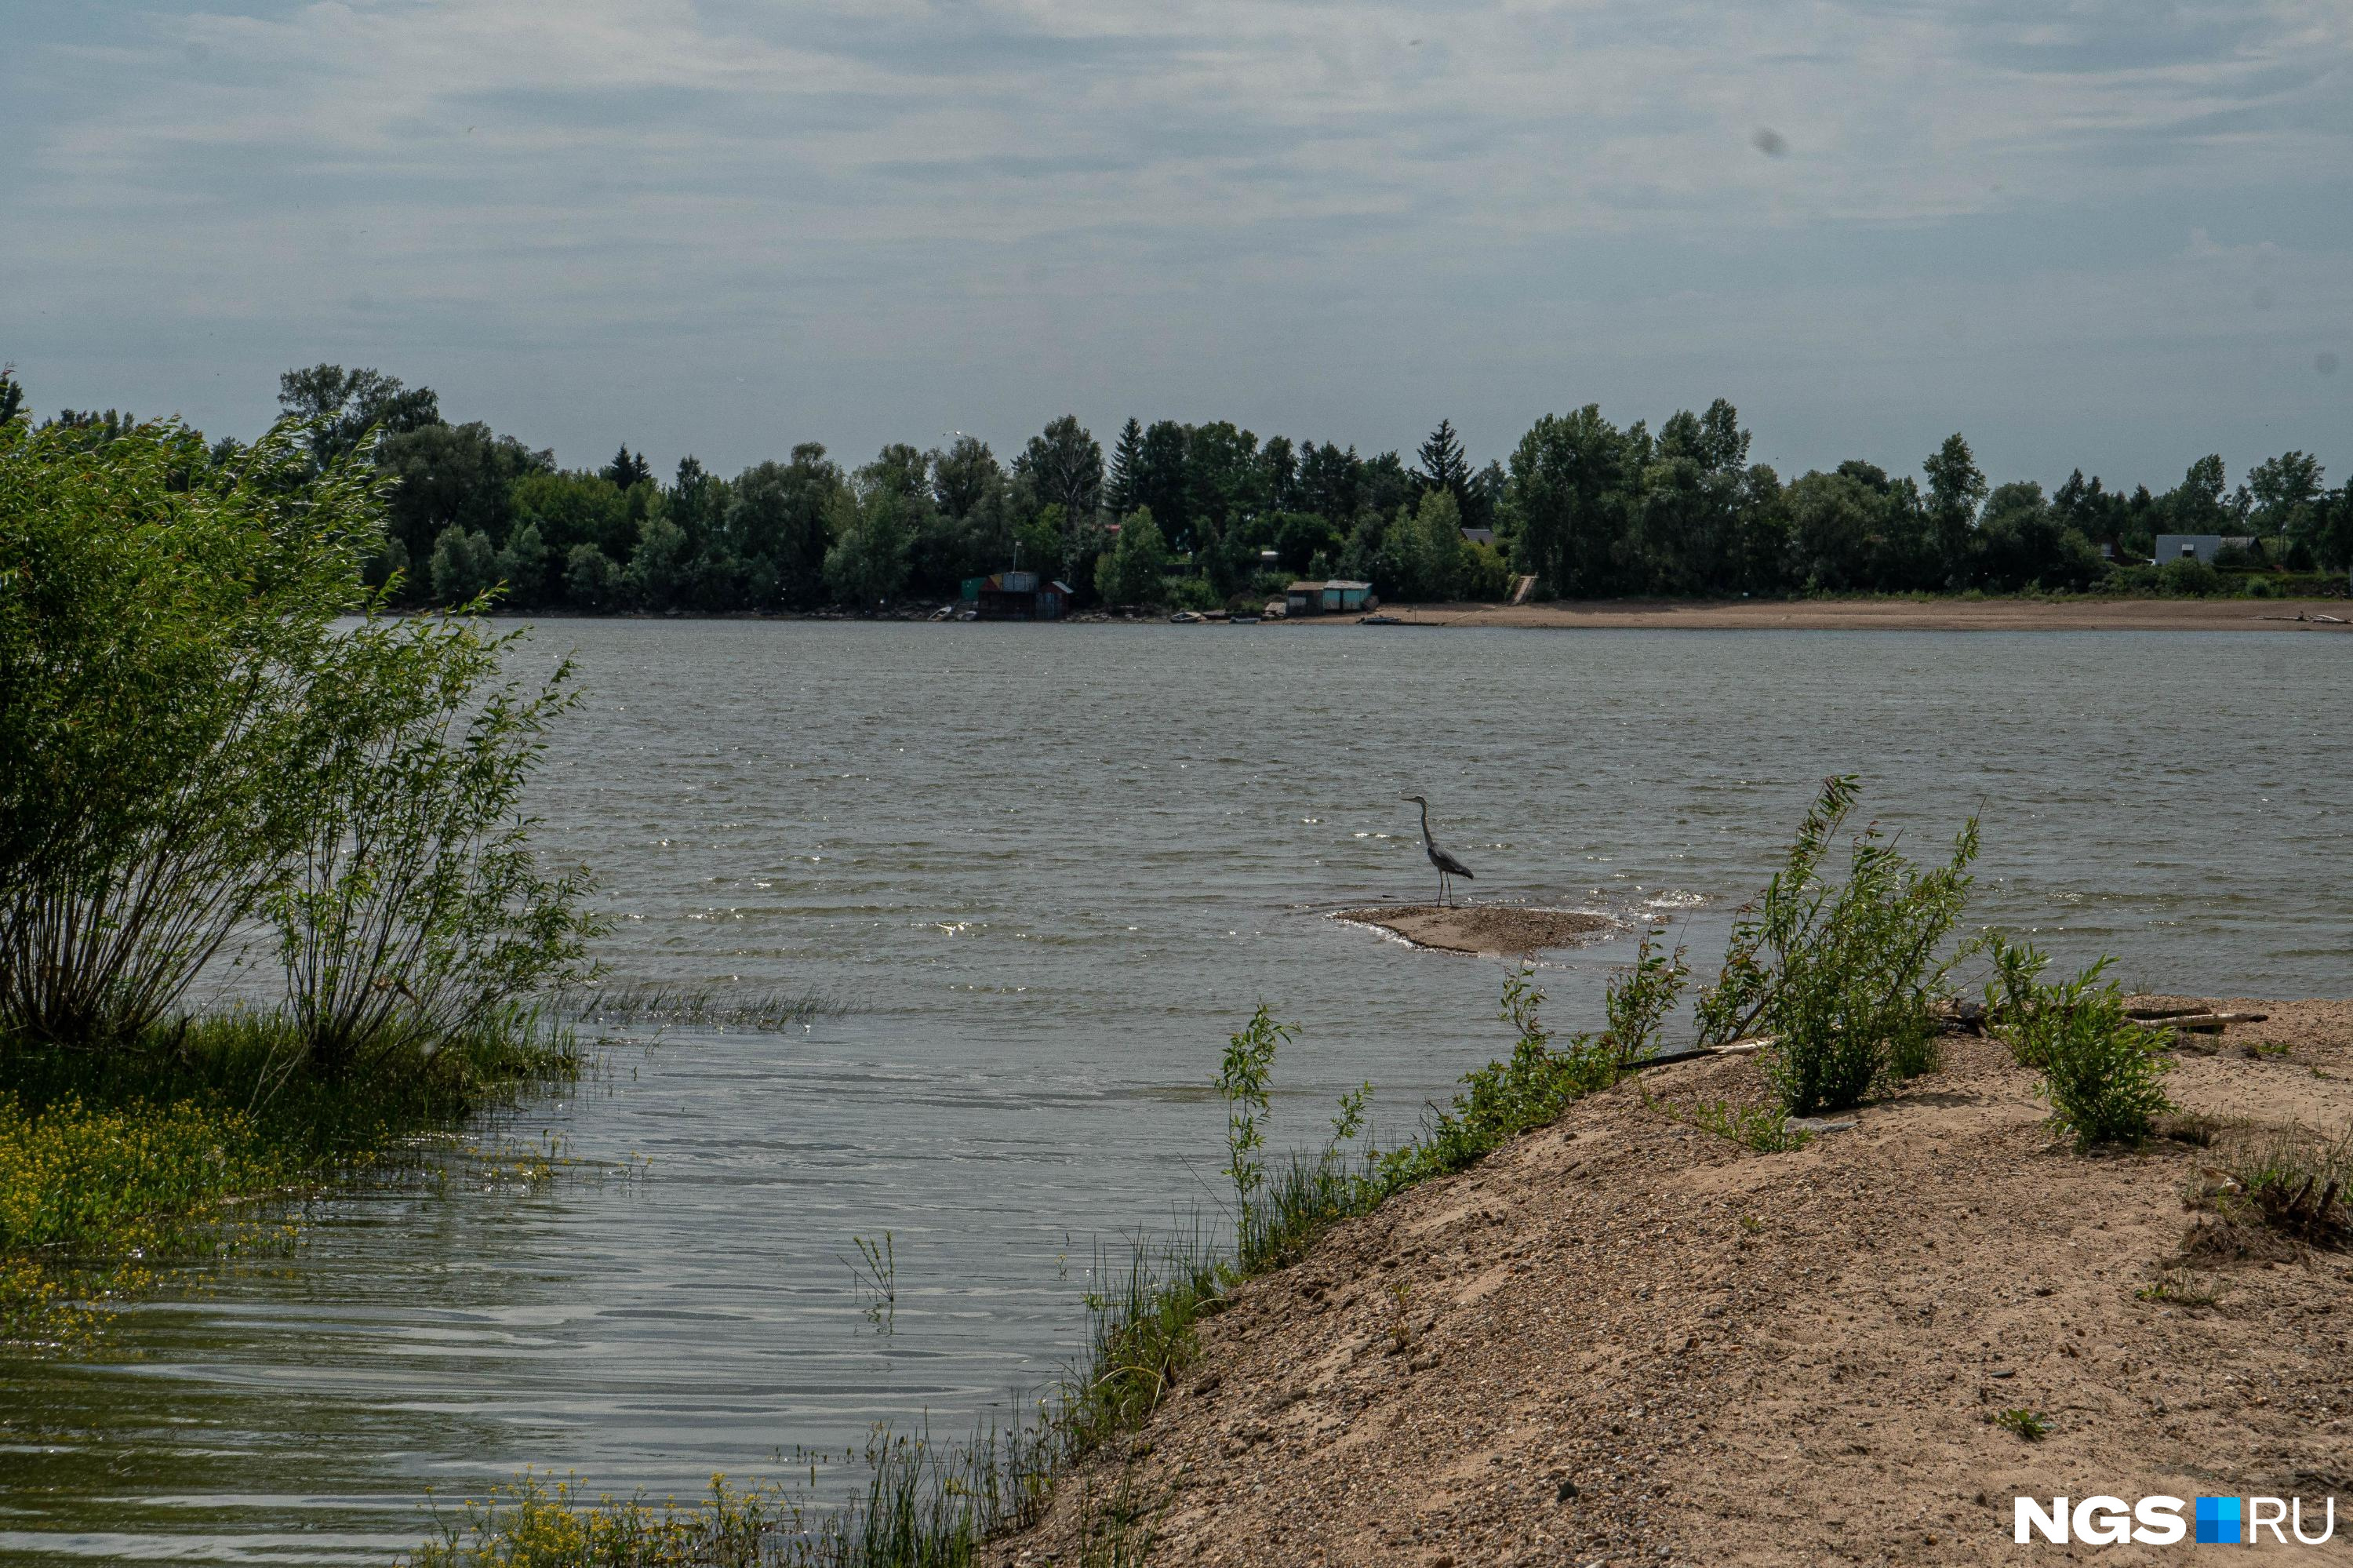 Пропавший контрактник найден мертвым под Новосибирском — его обнаружили в реке